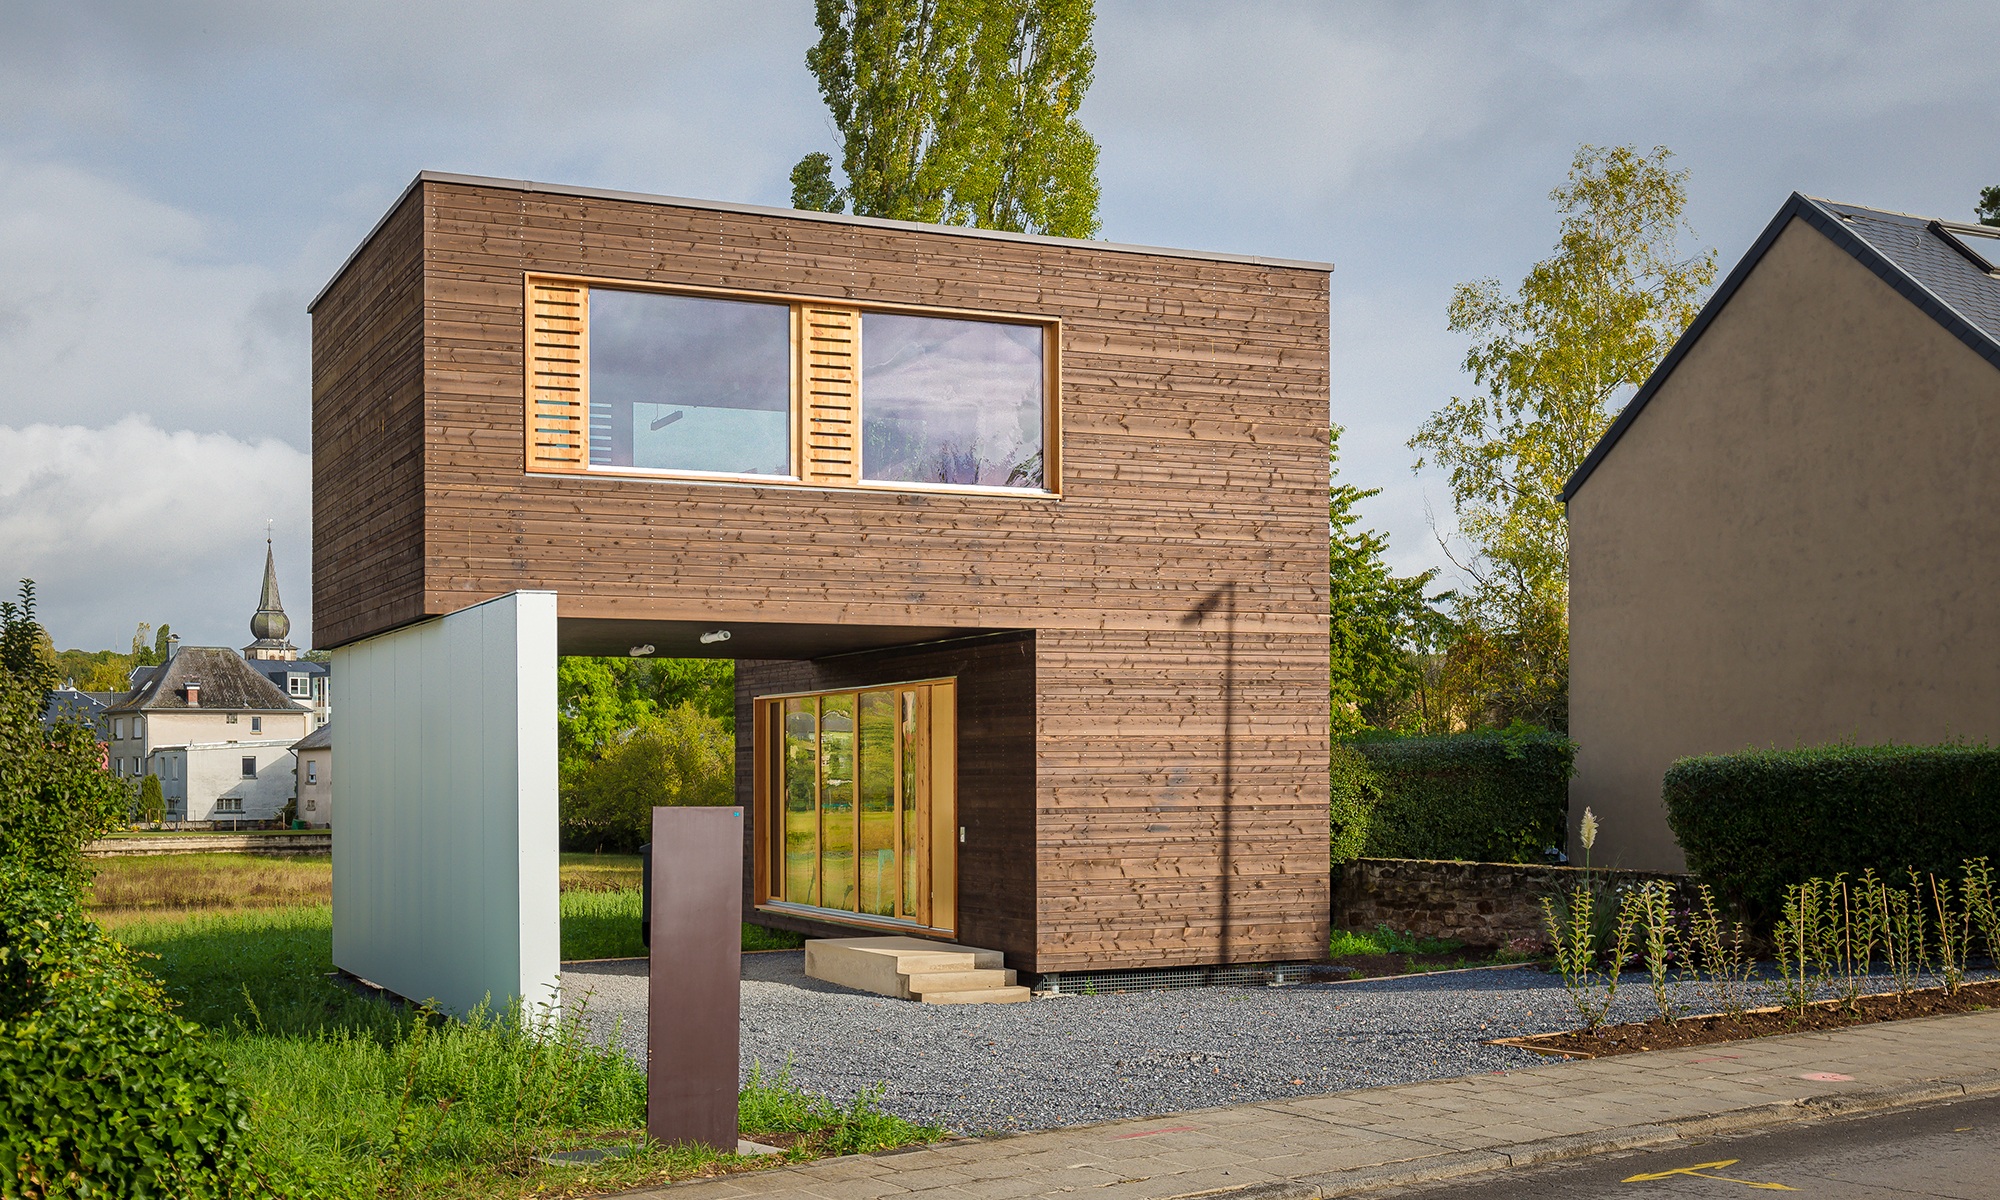 Maison modulaire individuelle et flexible composée de modules en bois réutilisés.